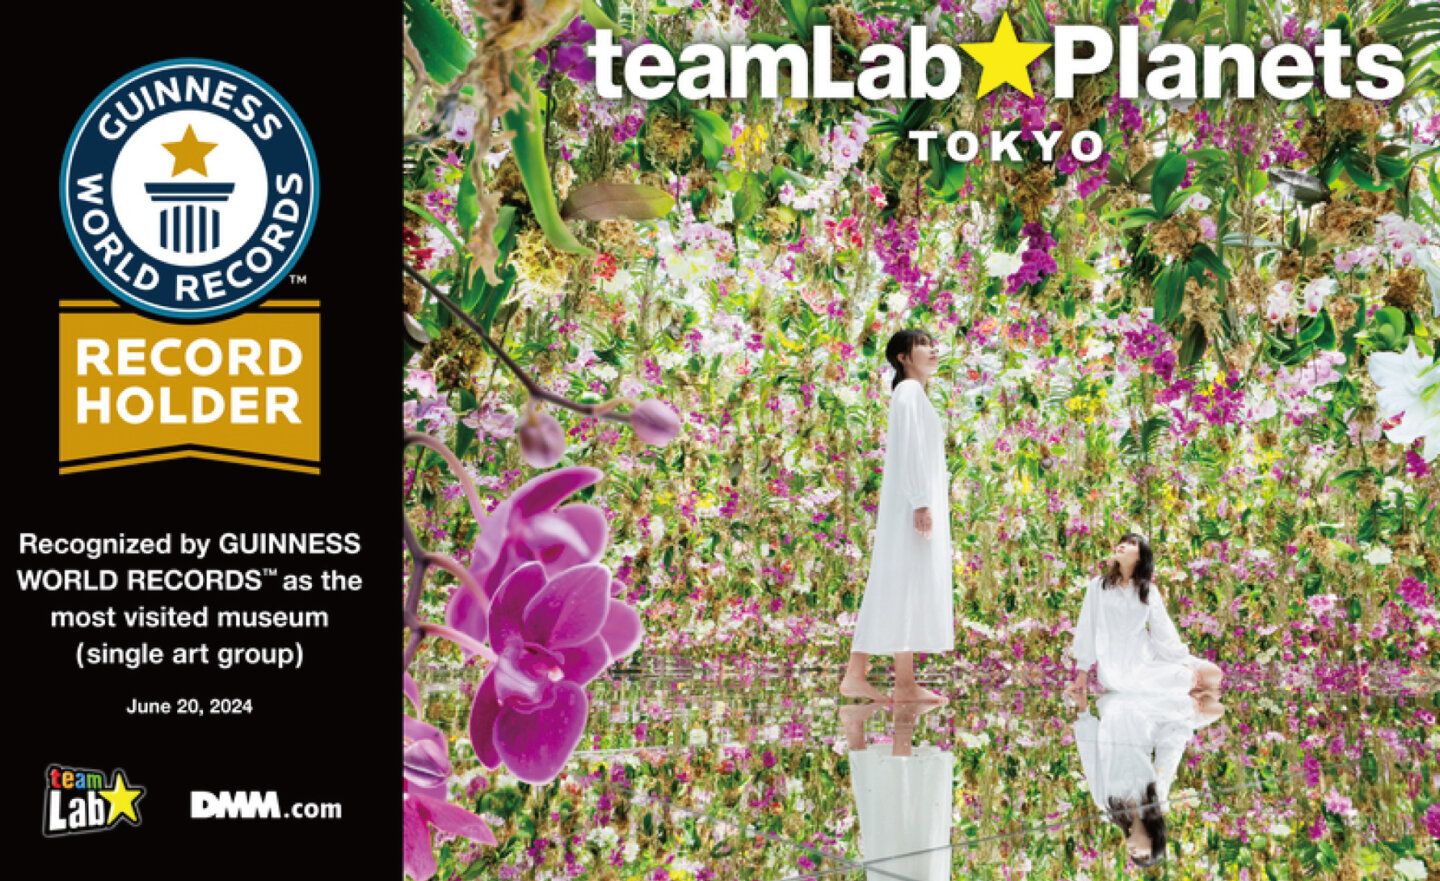 teamLab Planets TOKYO榮獲金氏世界紀錄認證，成為全球參觀人數最多的單一藝術團體博物館